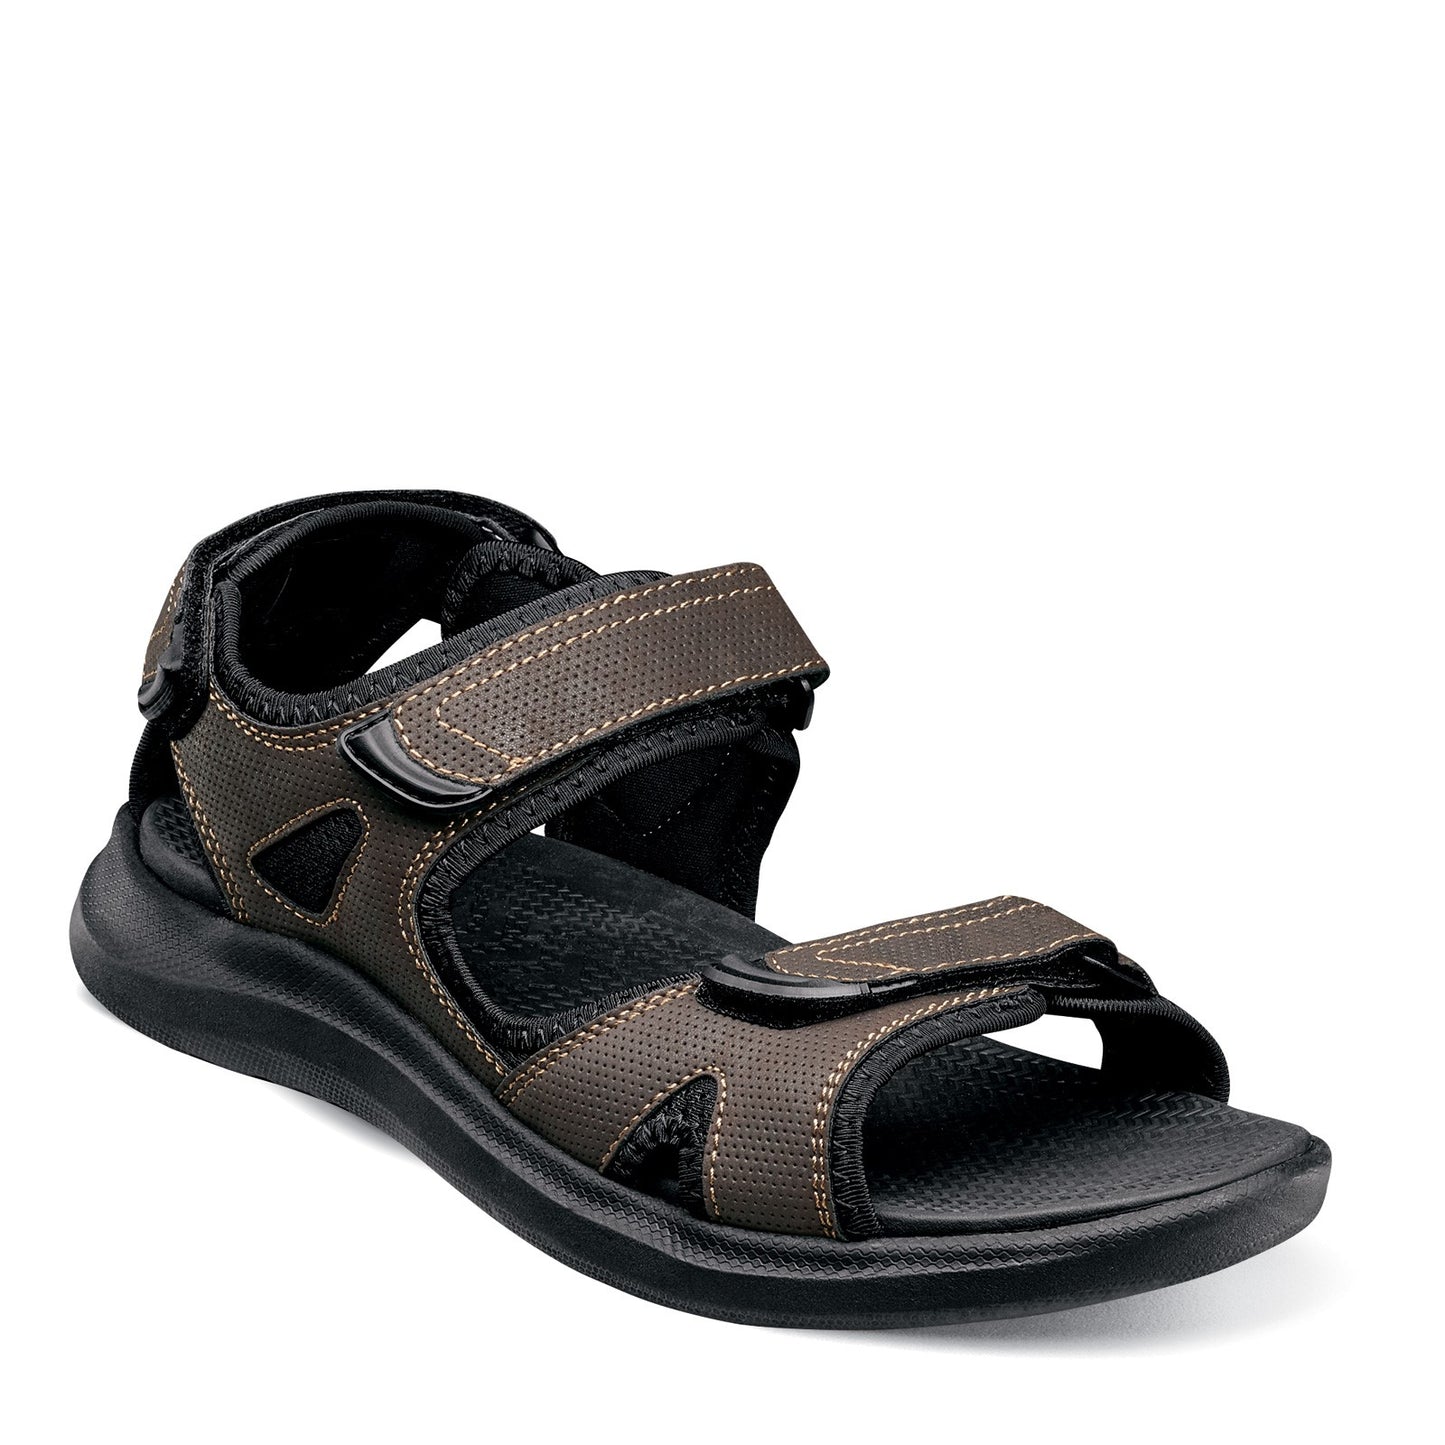 Peltz Shoes  Men's Nunn Bush Rio Vista River Sandal BROWN BLACK 84844-200